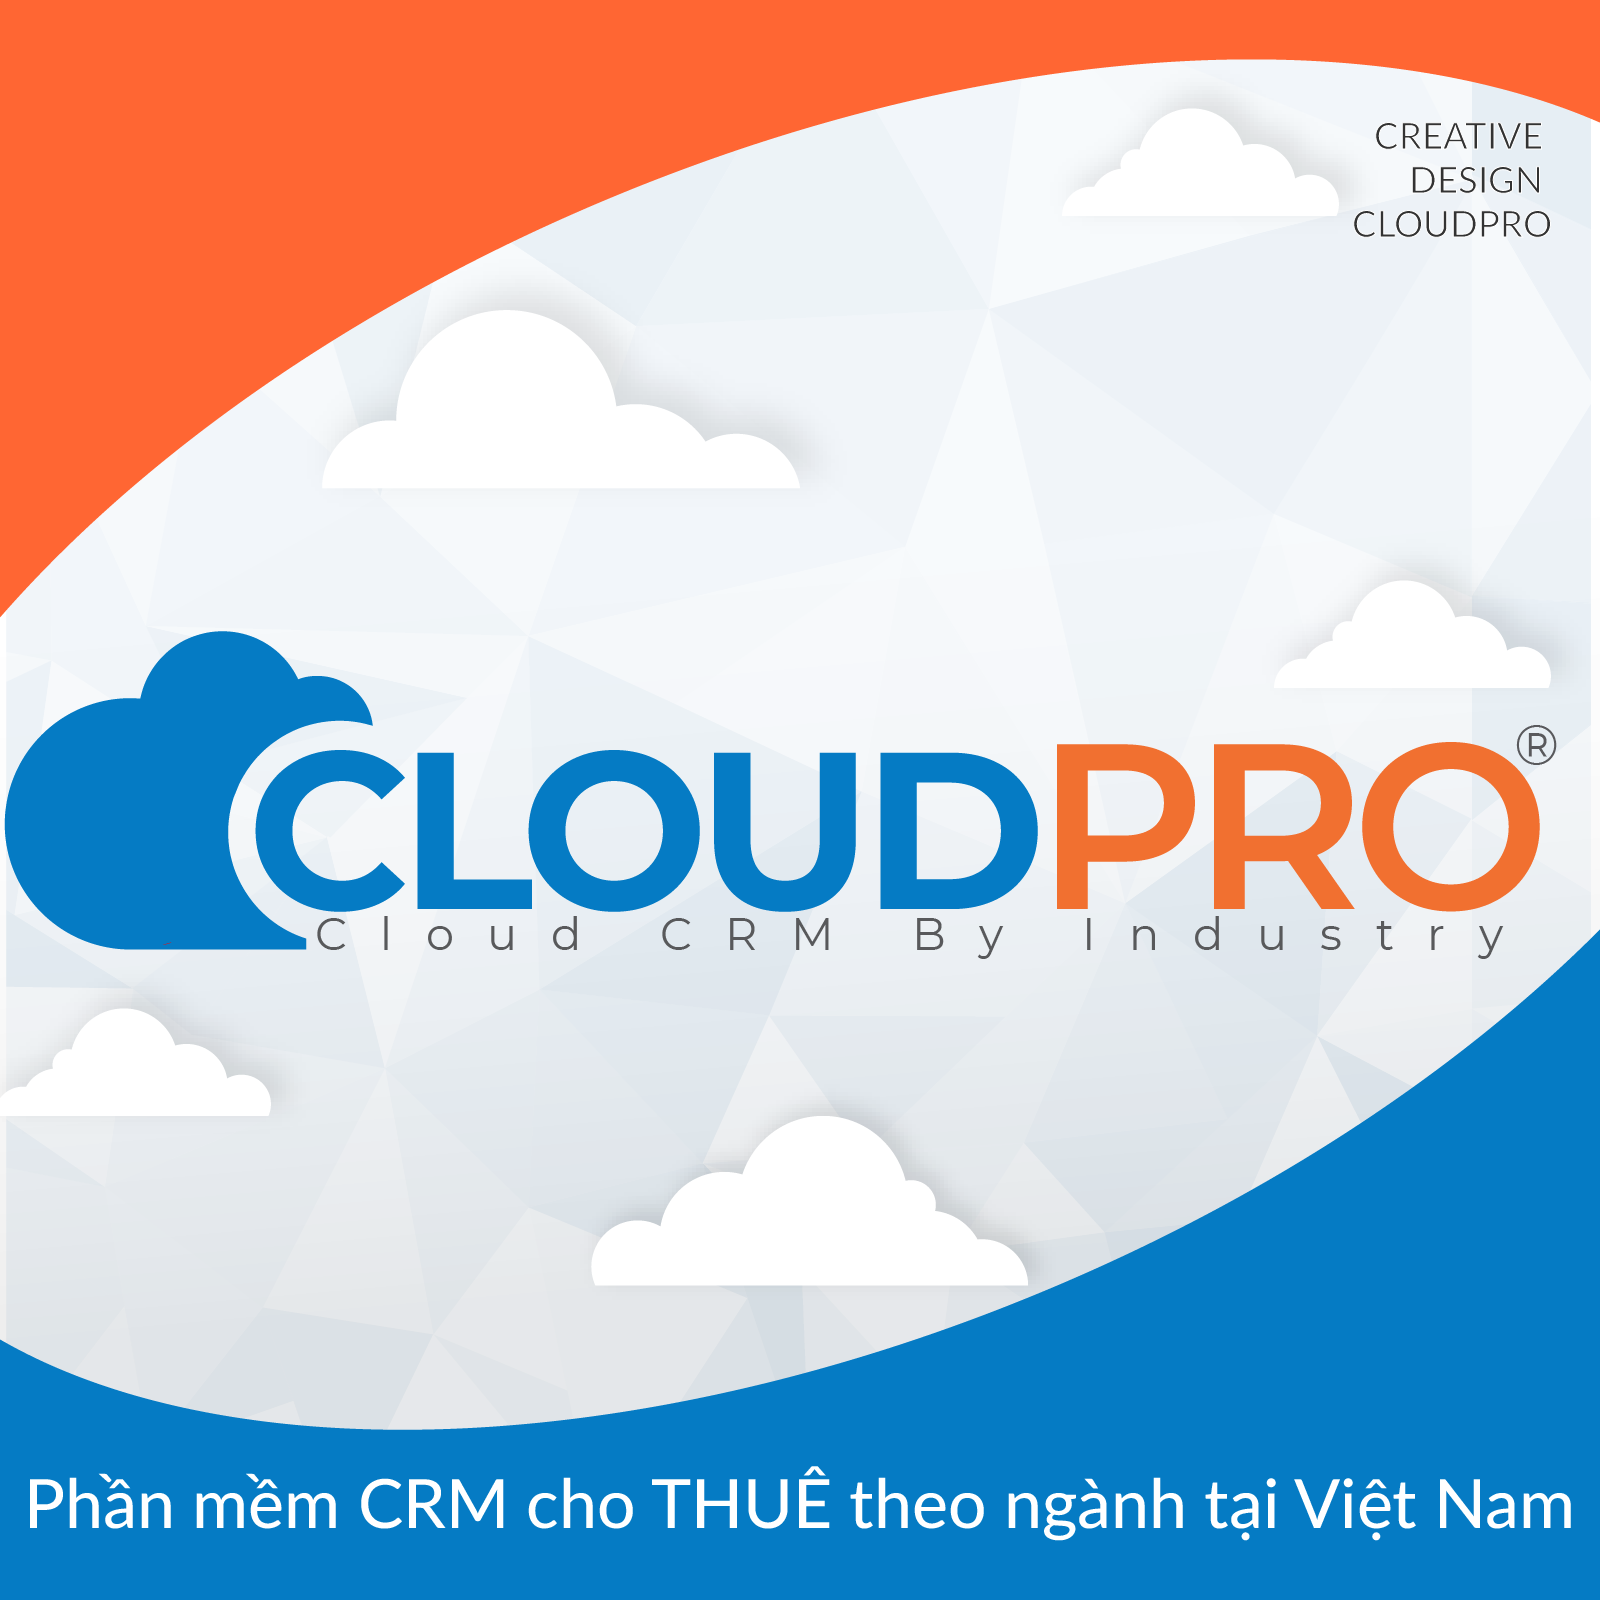 Cloud pro chăm sóc khách hàng online